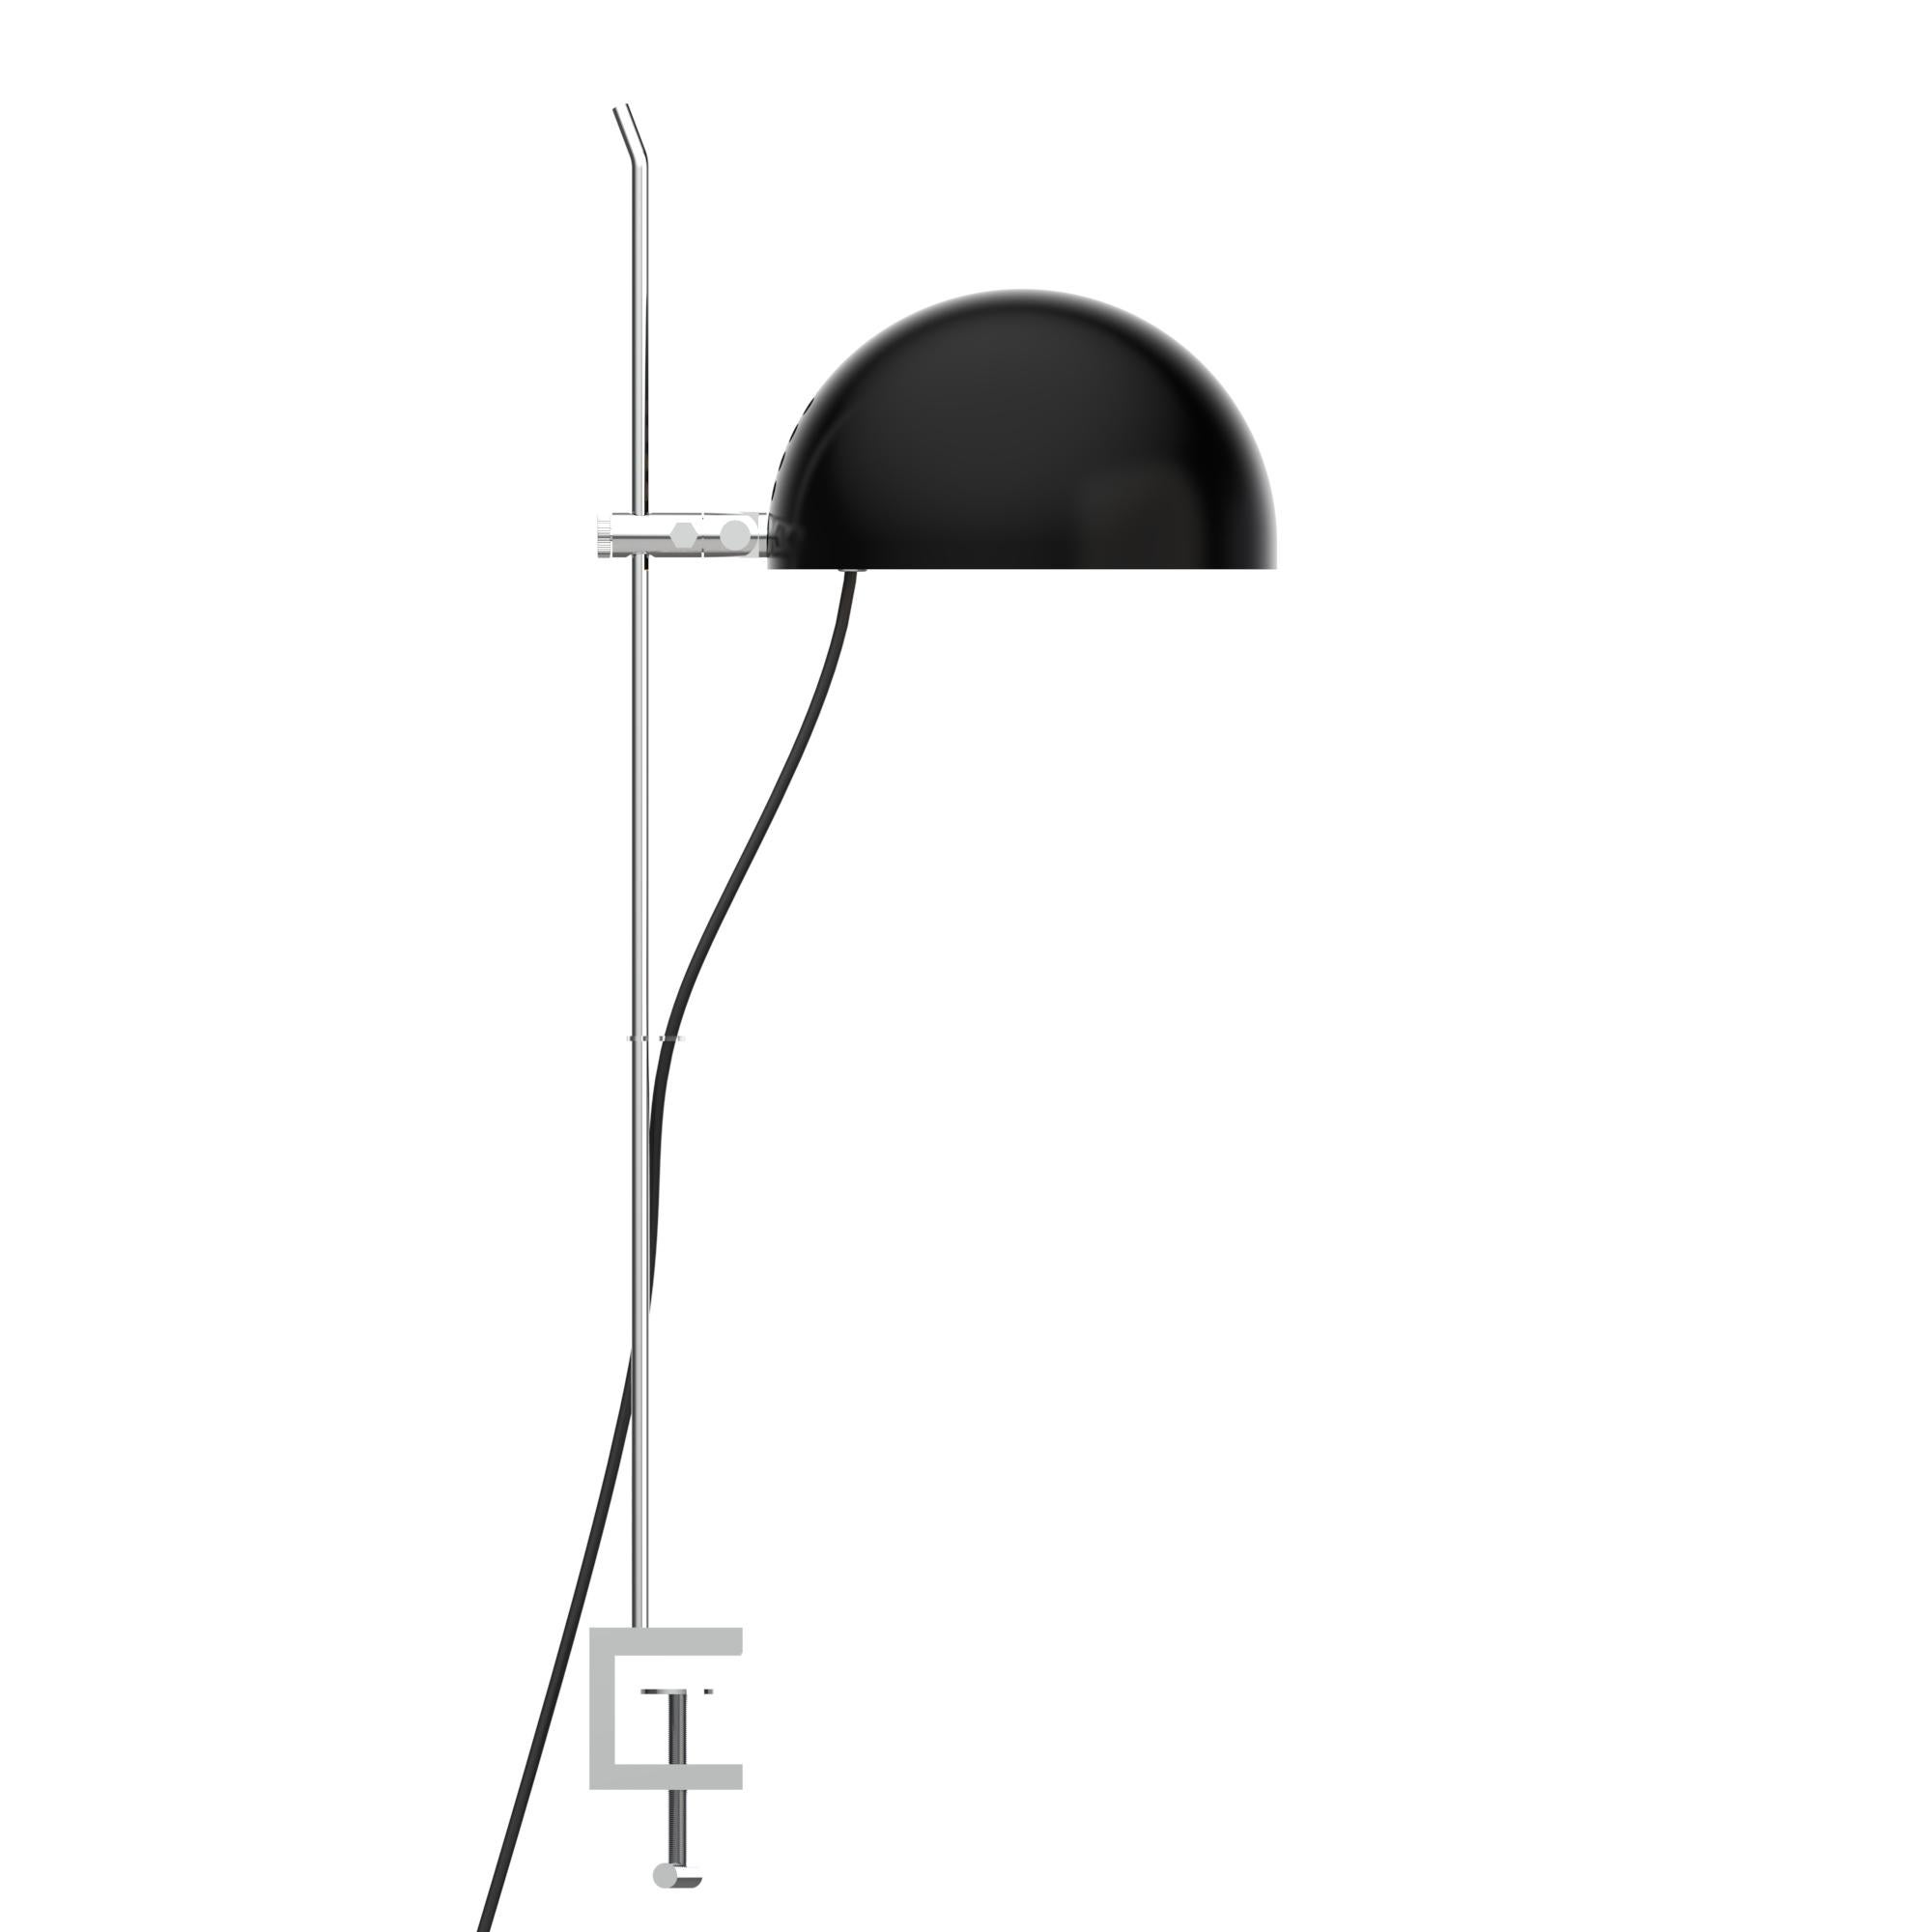 Alain Richard 'A22f' Task Lamp in Chrome for Disderot For Sale 3